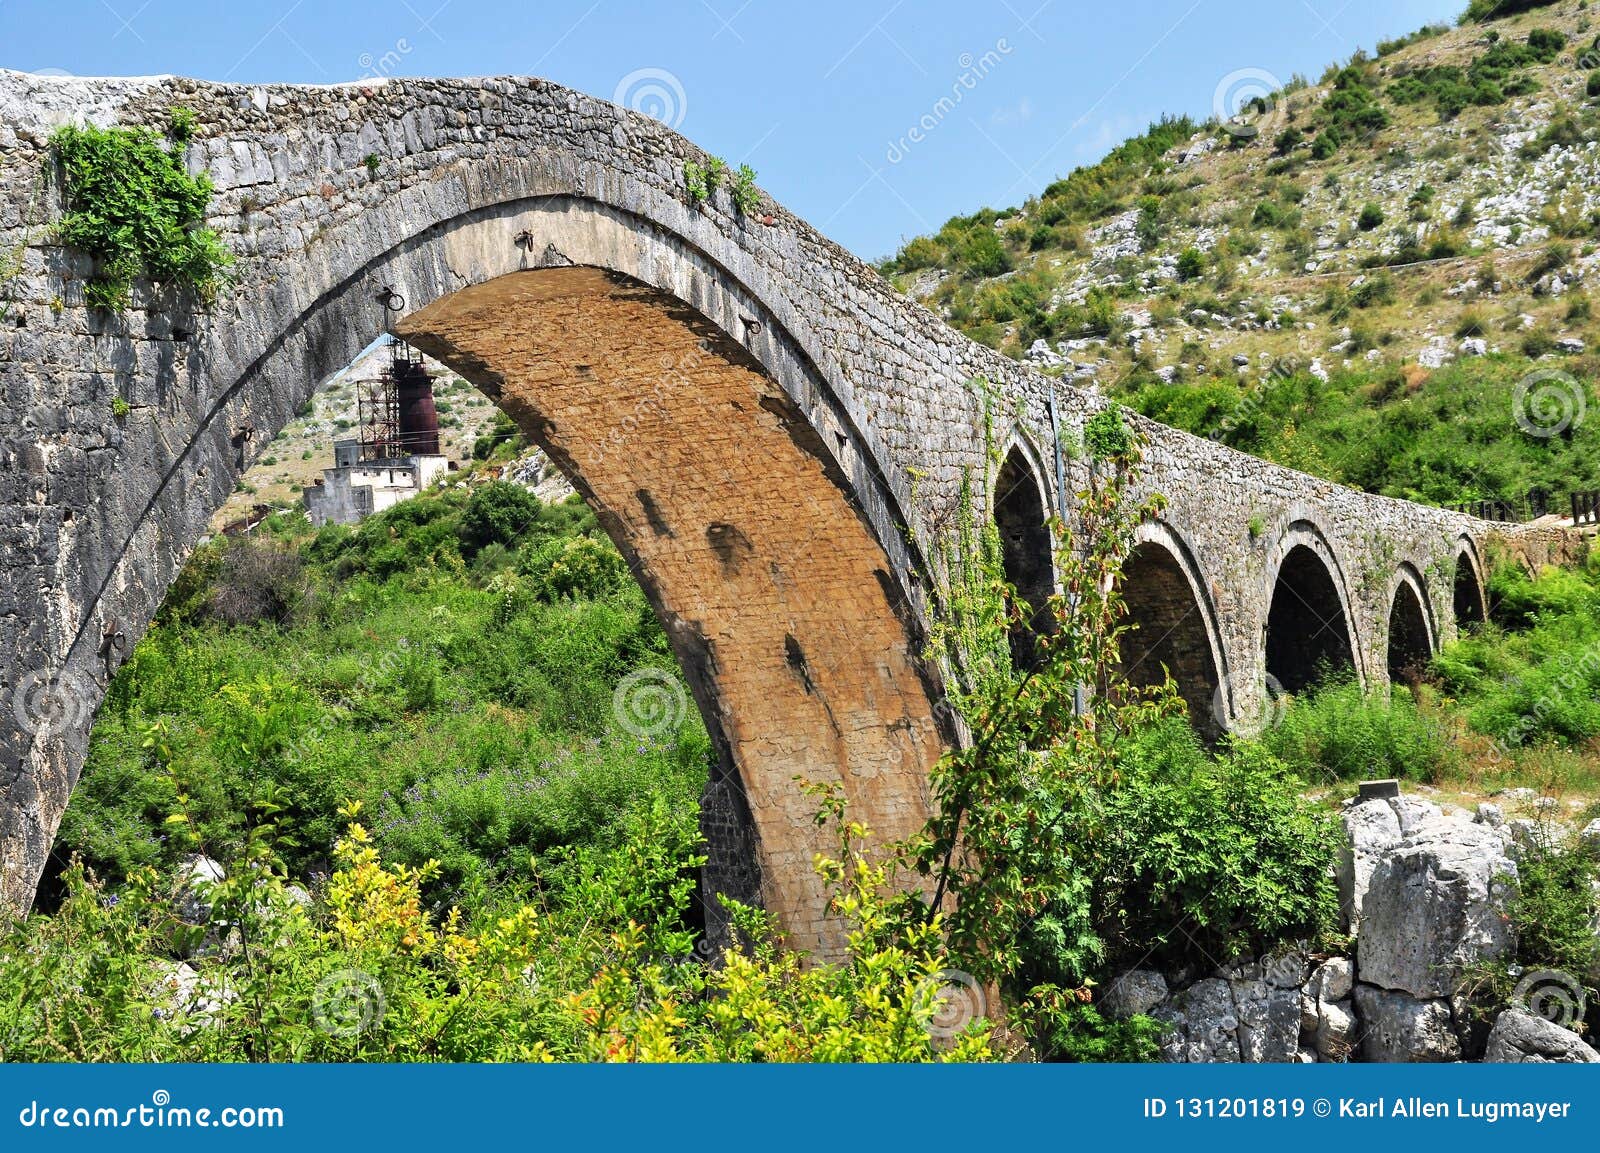 the famous mesi bridge in mes, albania